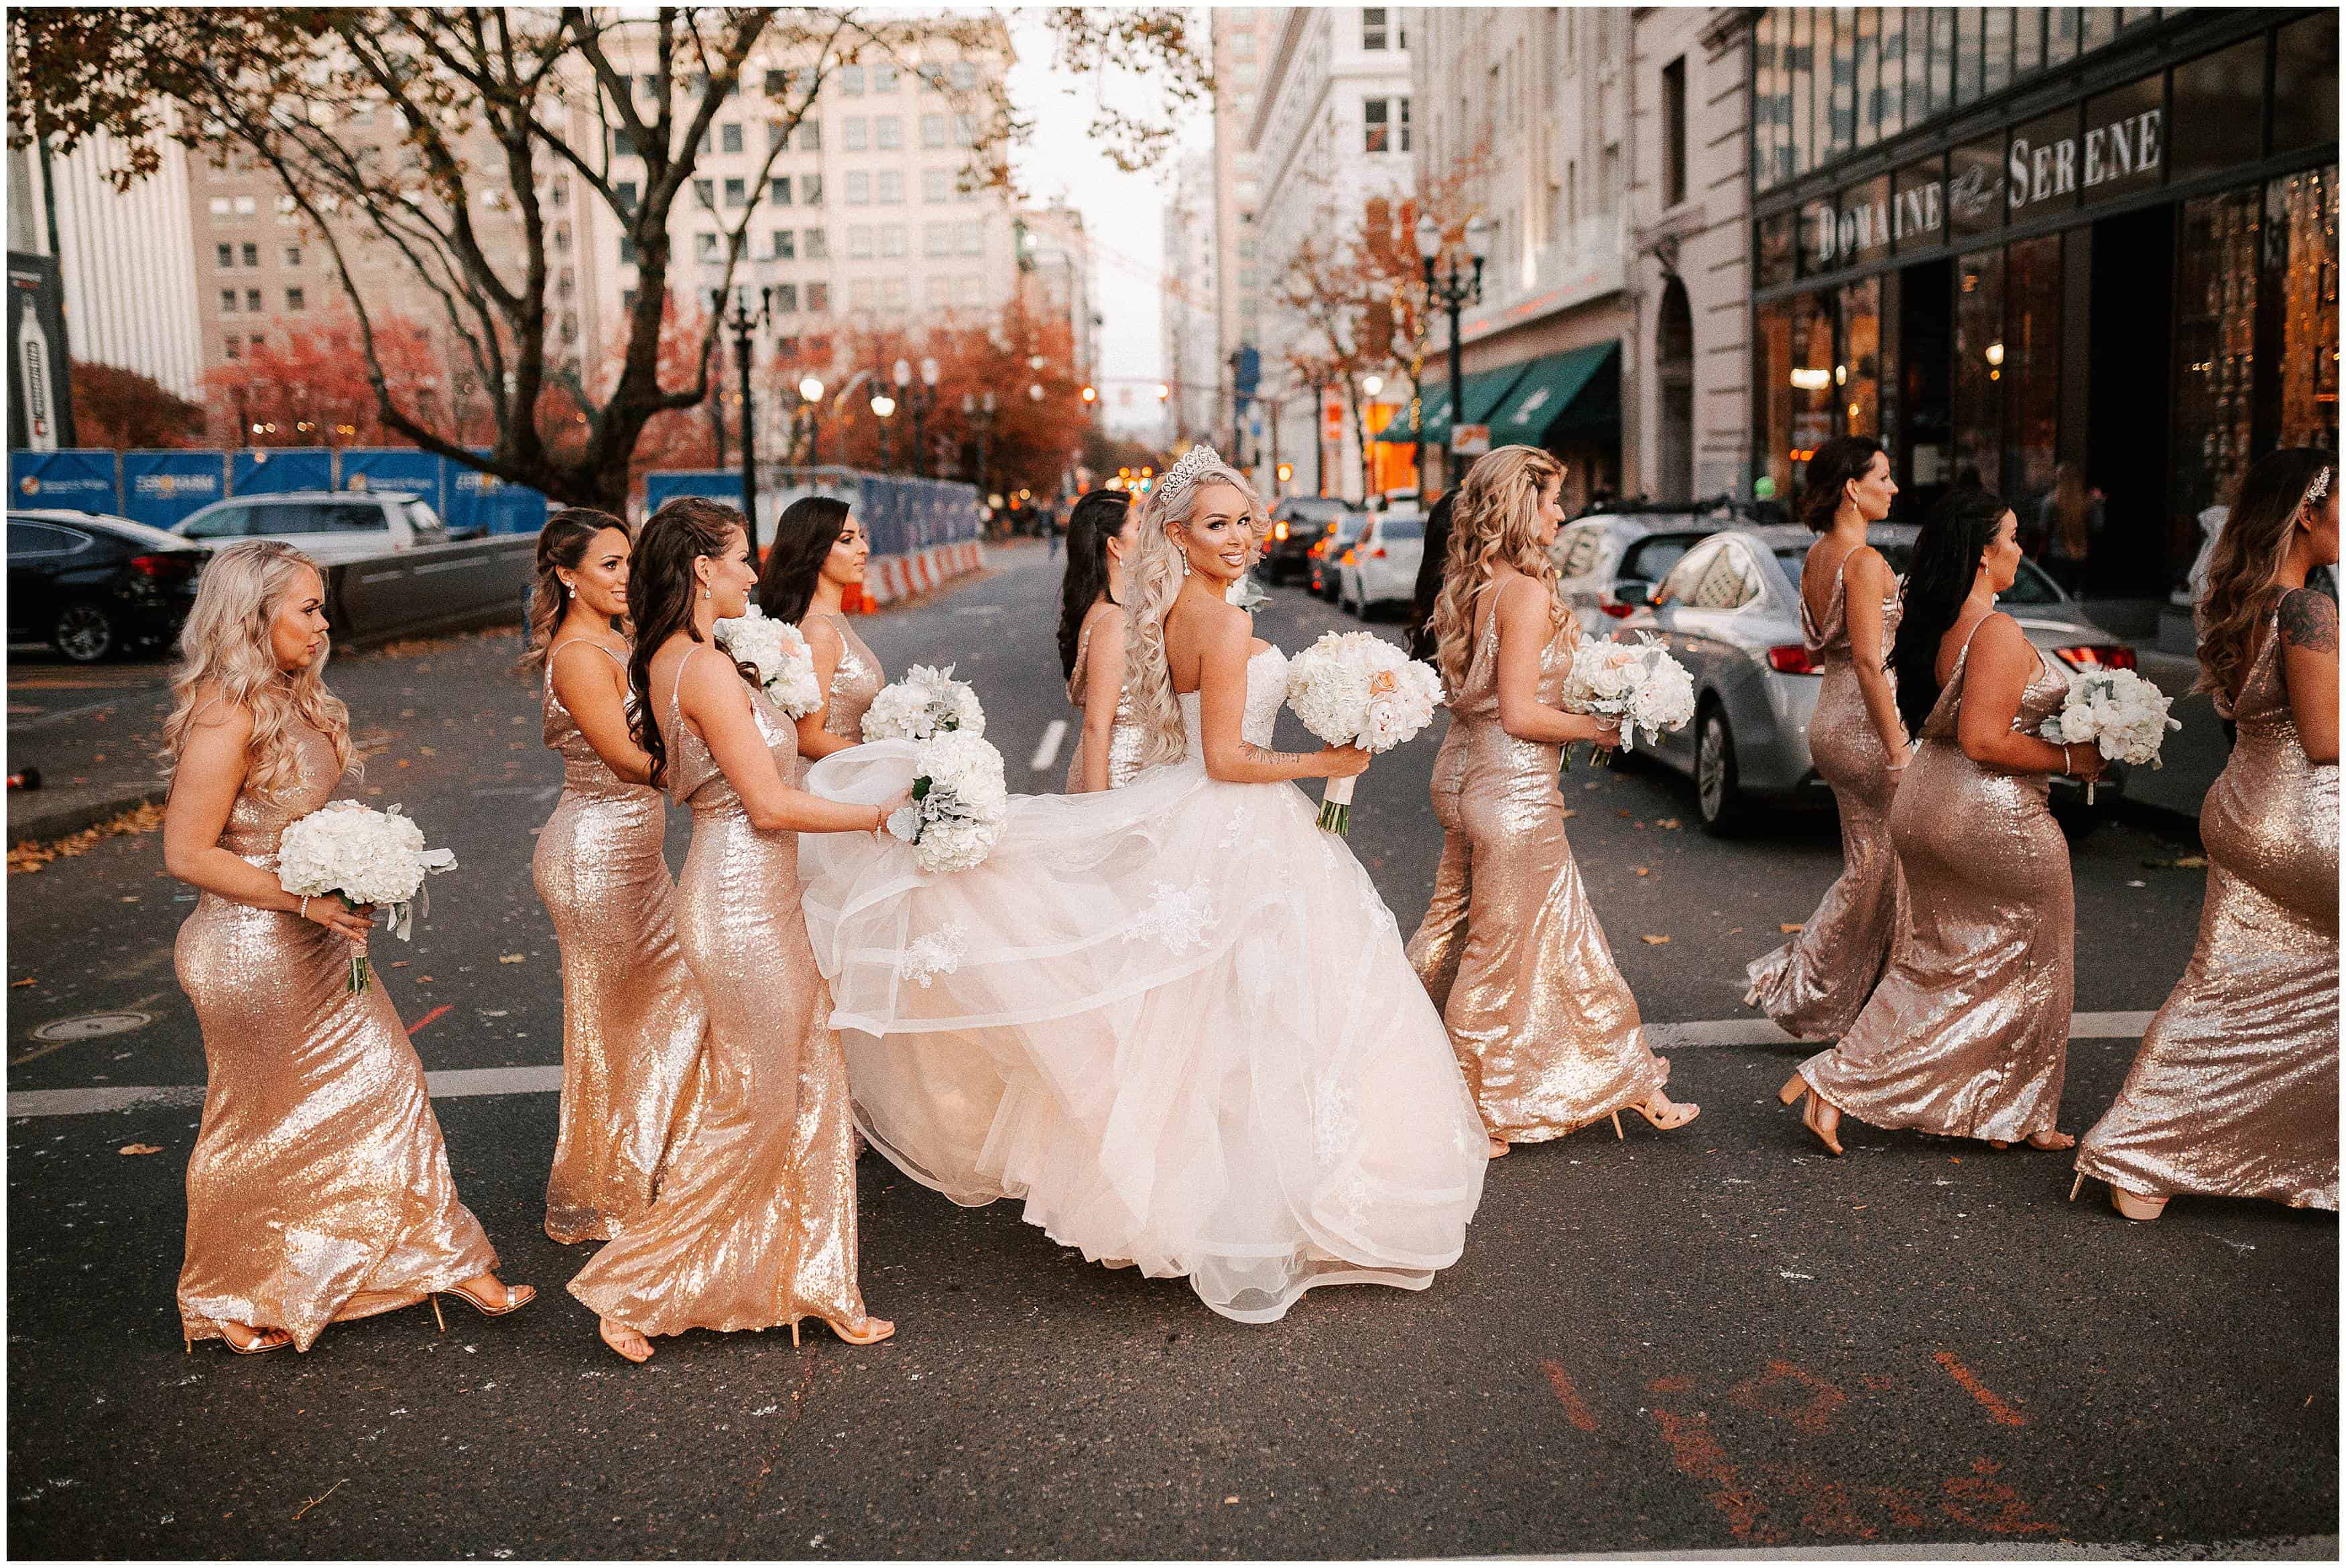 Wedding bridal photos in downtown Portland